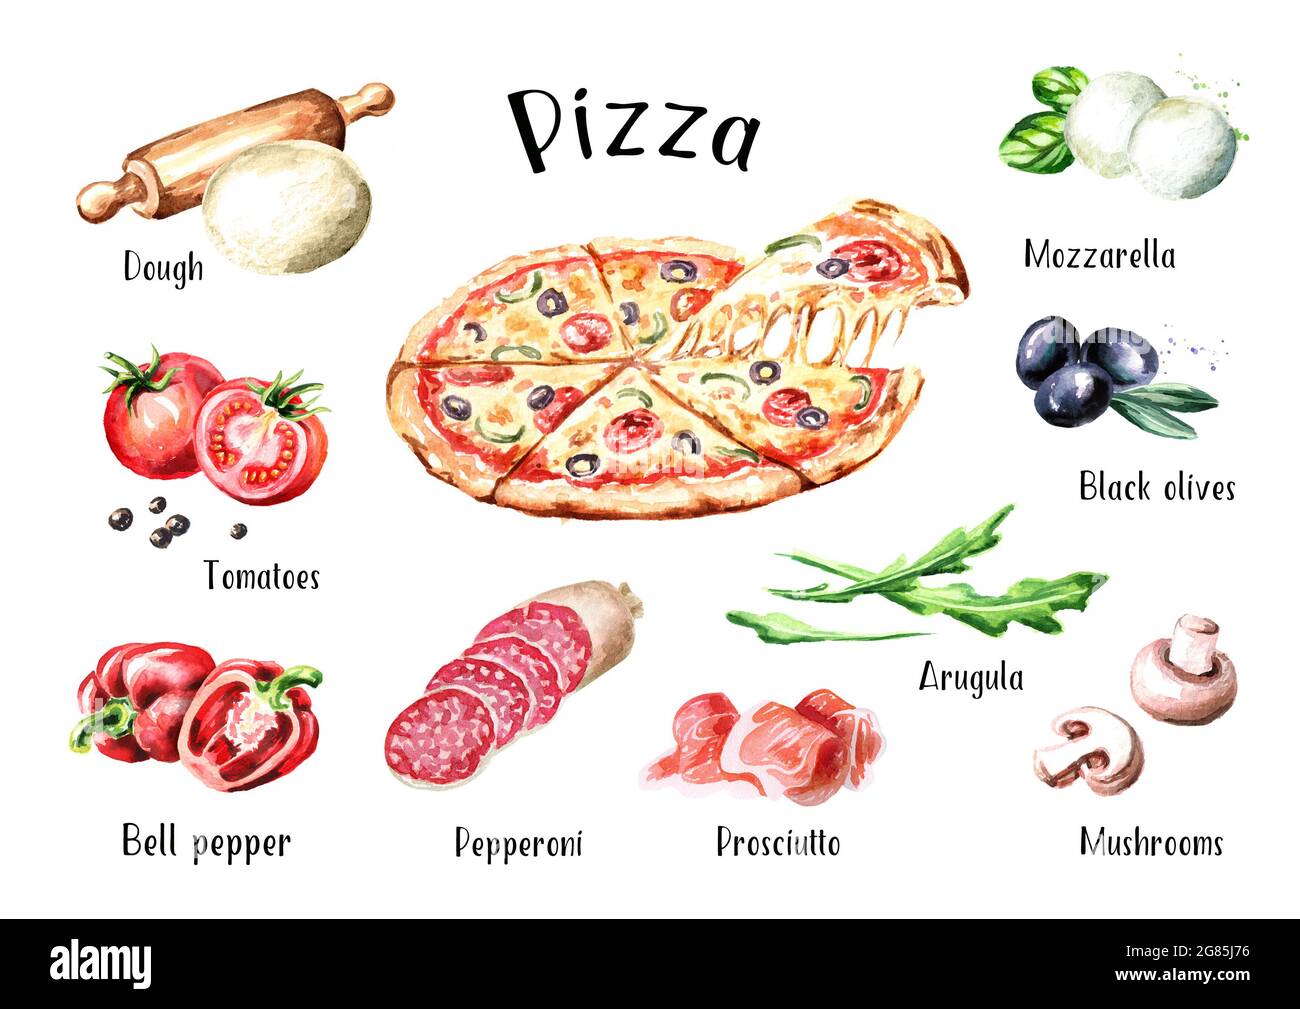 рецепт пиццы 4 сыра на английском языке фото 21